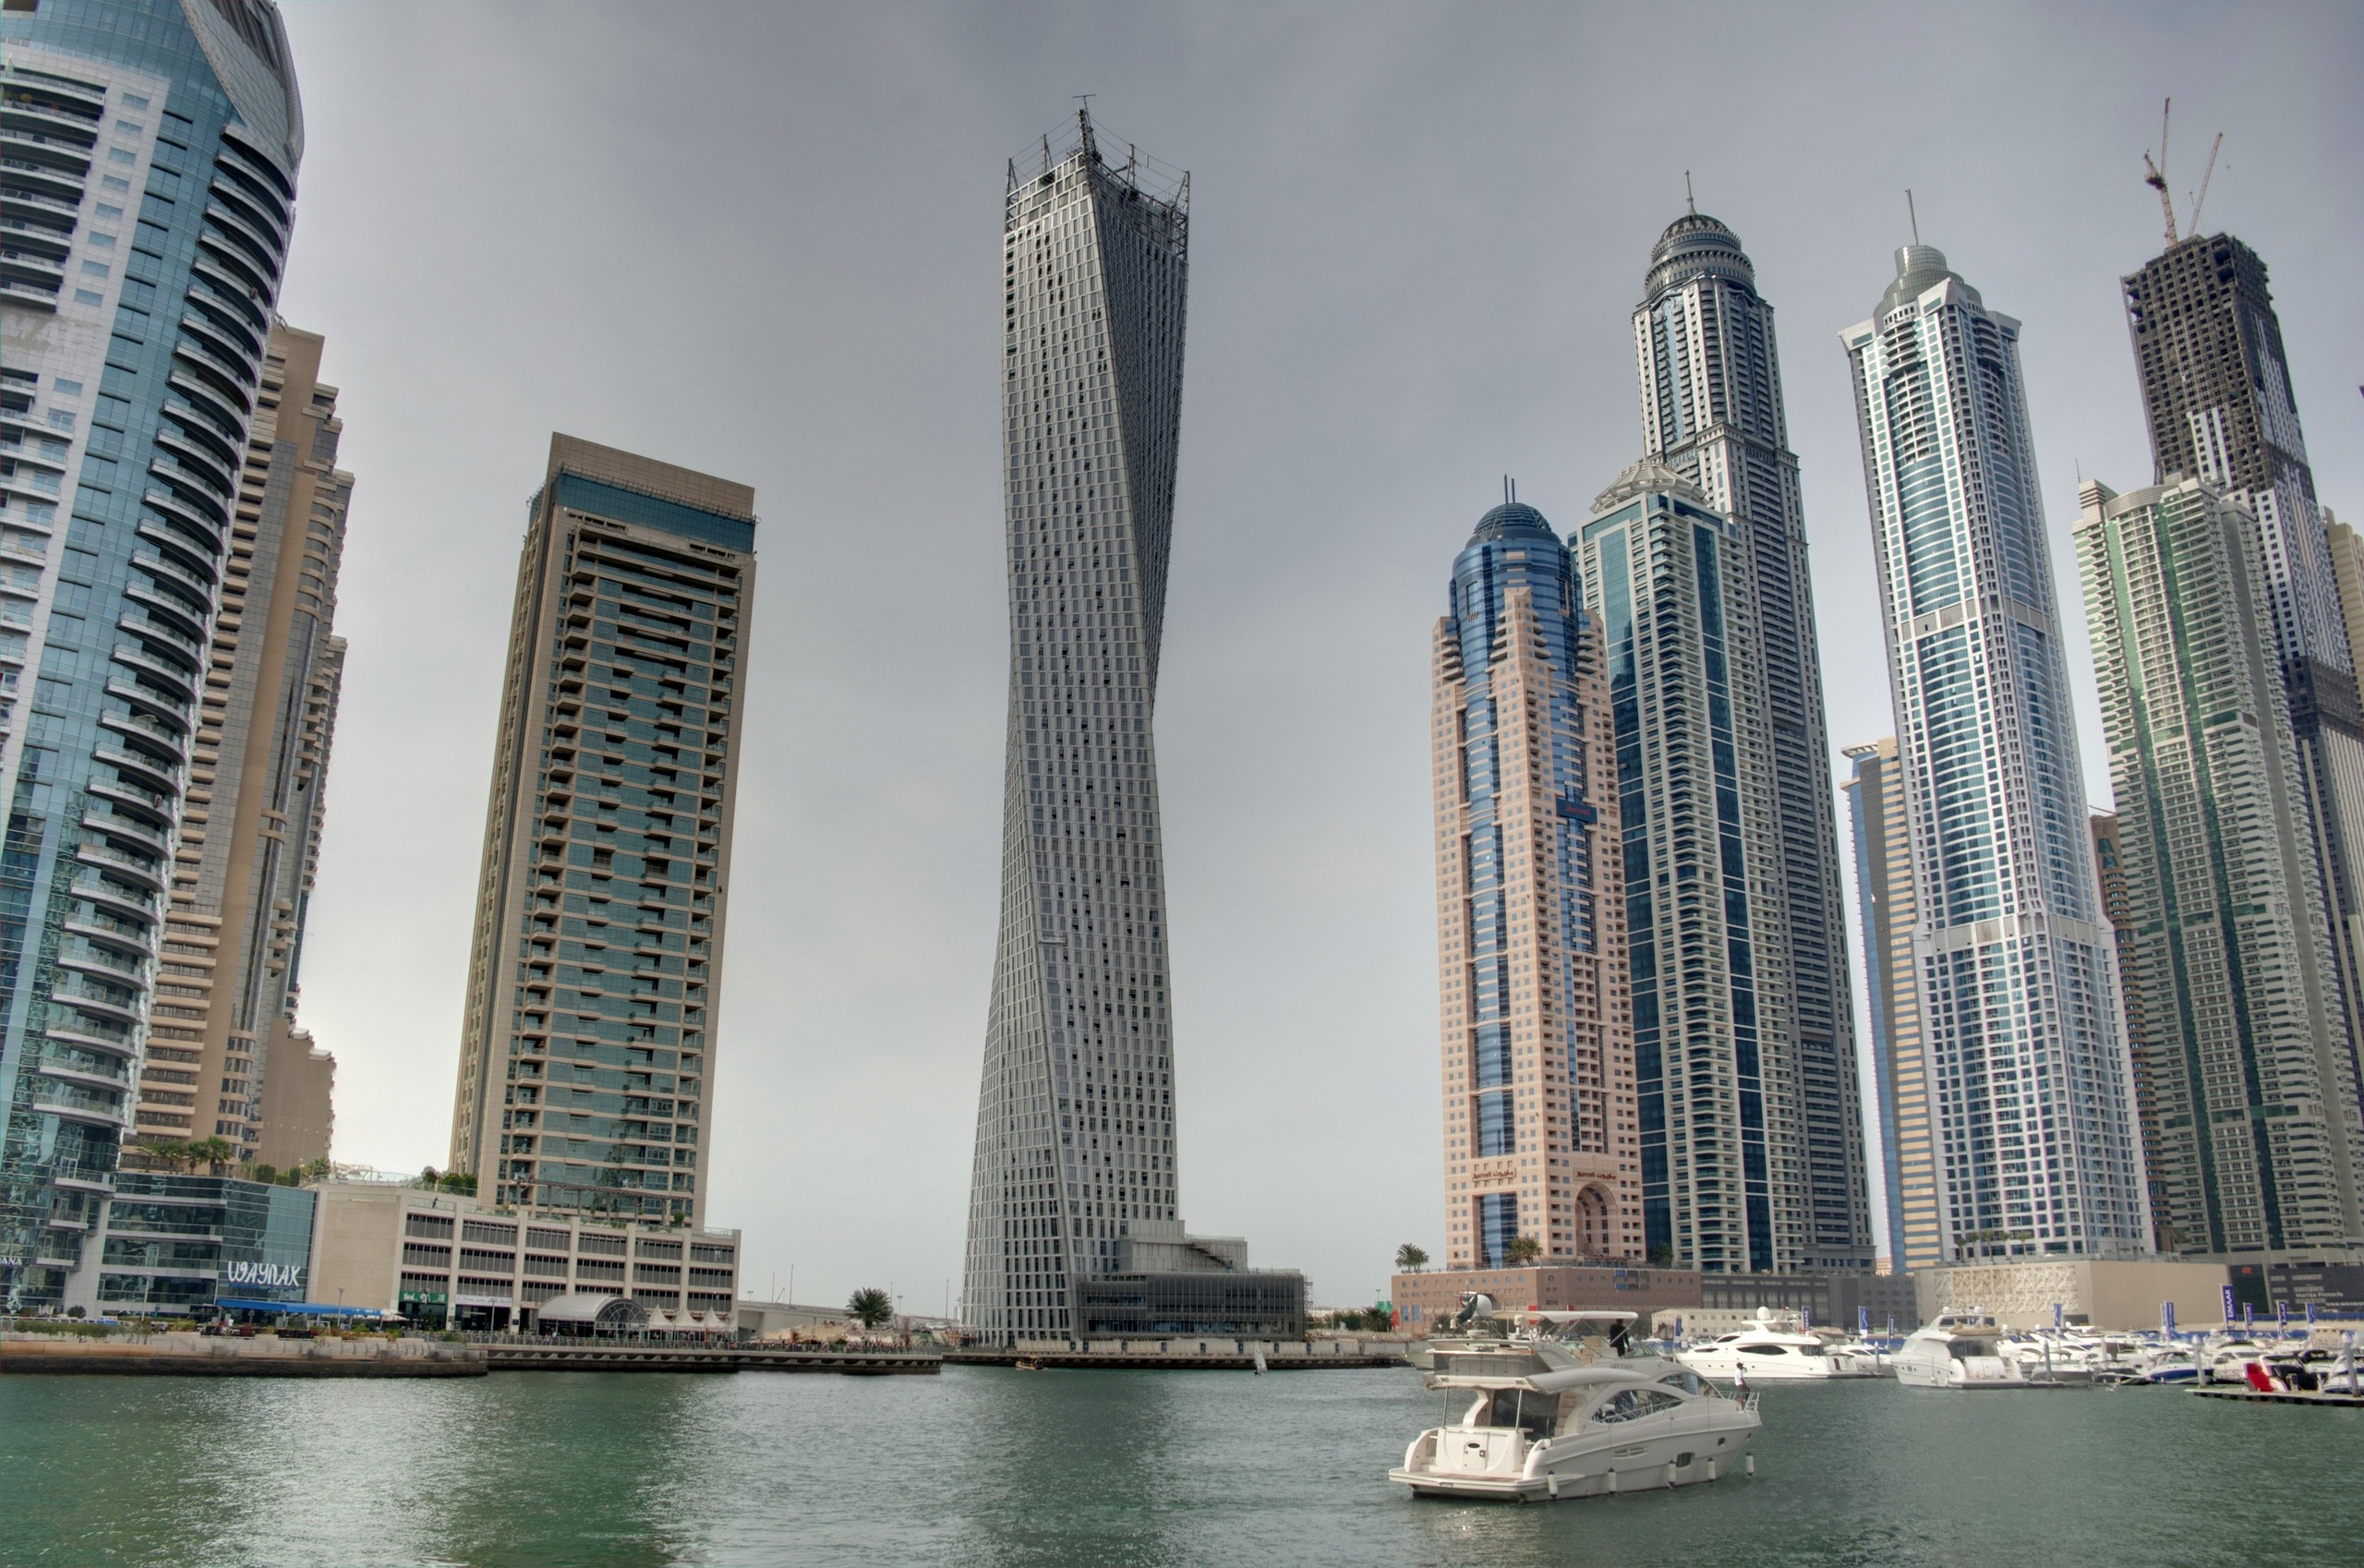 Cayan Tower in Dubai